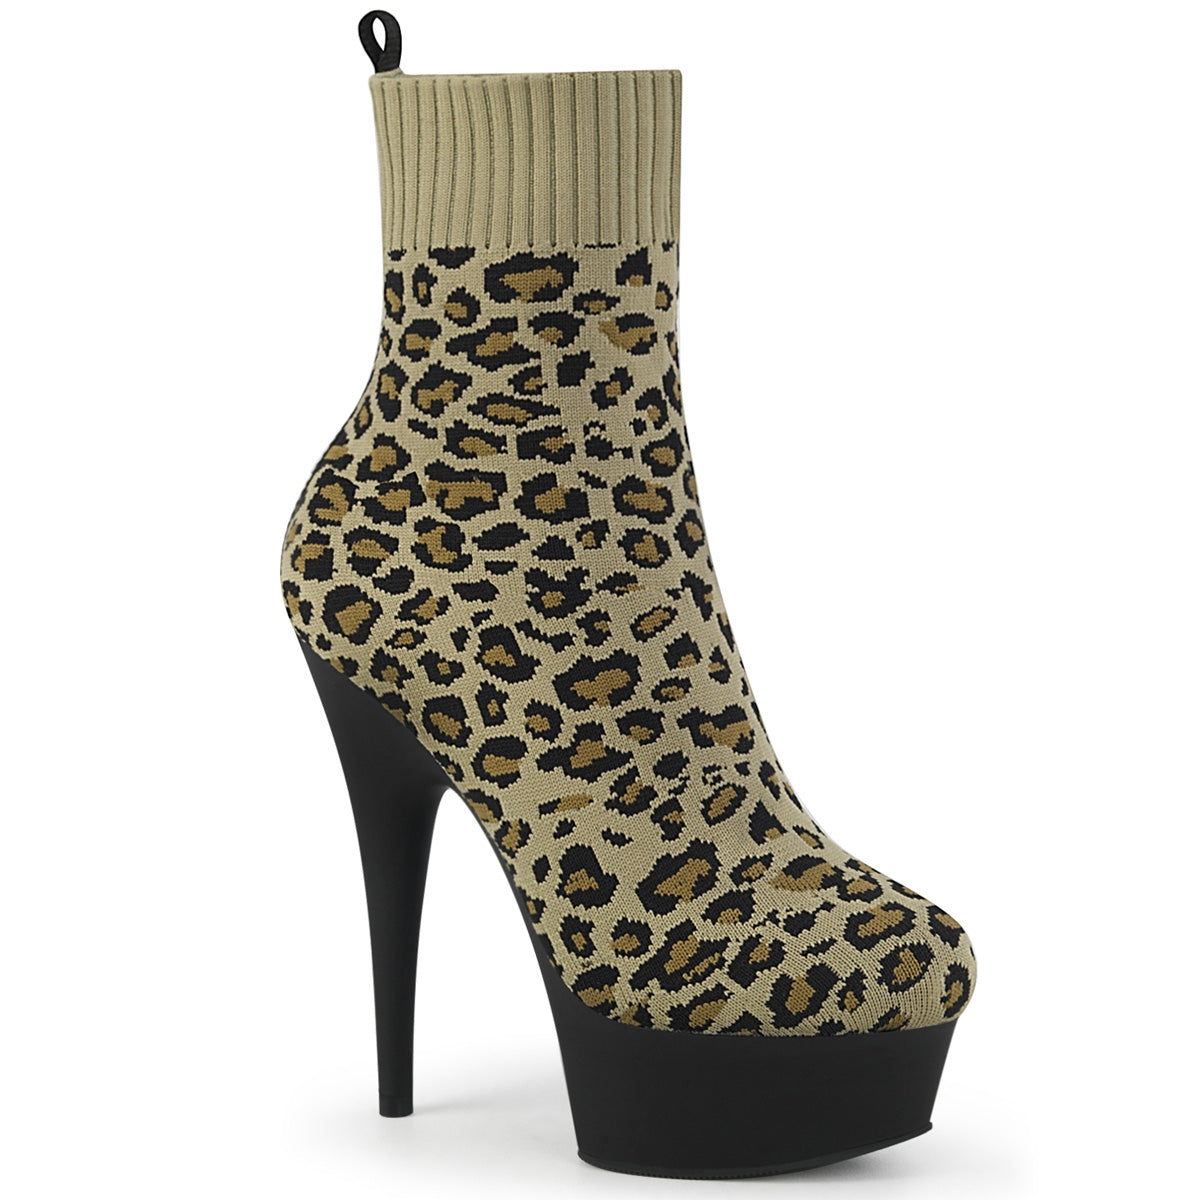 Pleaser Womens Ankle Boots DELIGHT-1002LP Tan Str. Leopard Print Fabric/Blk Matte